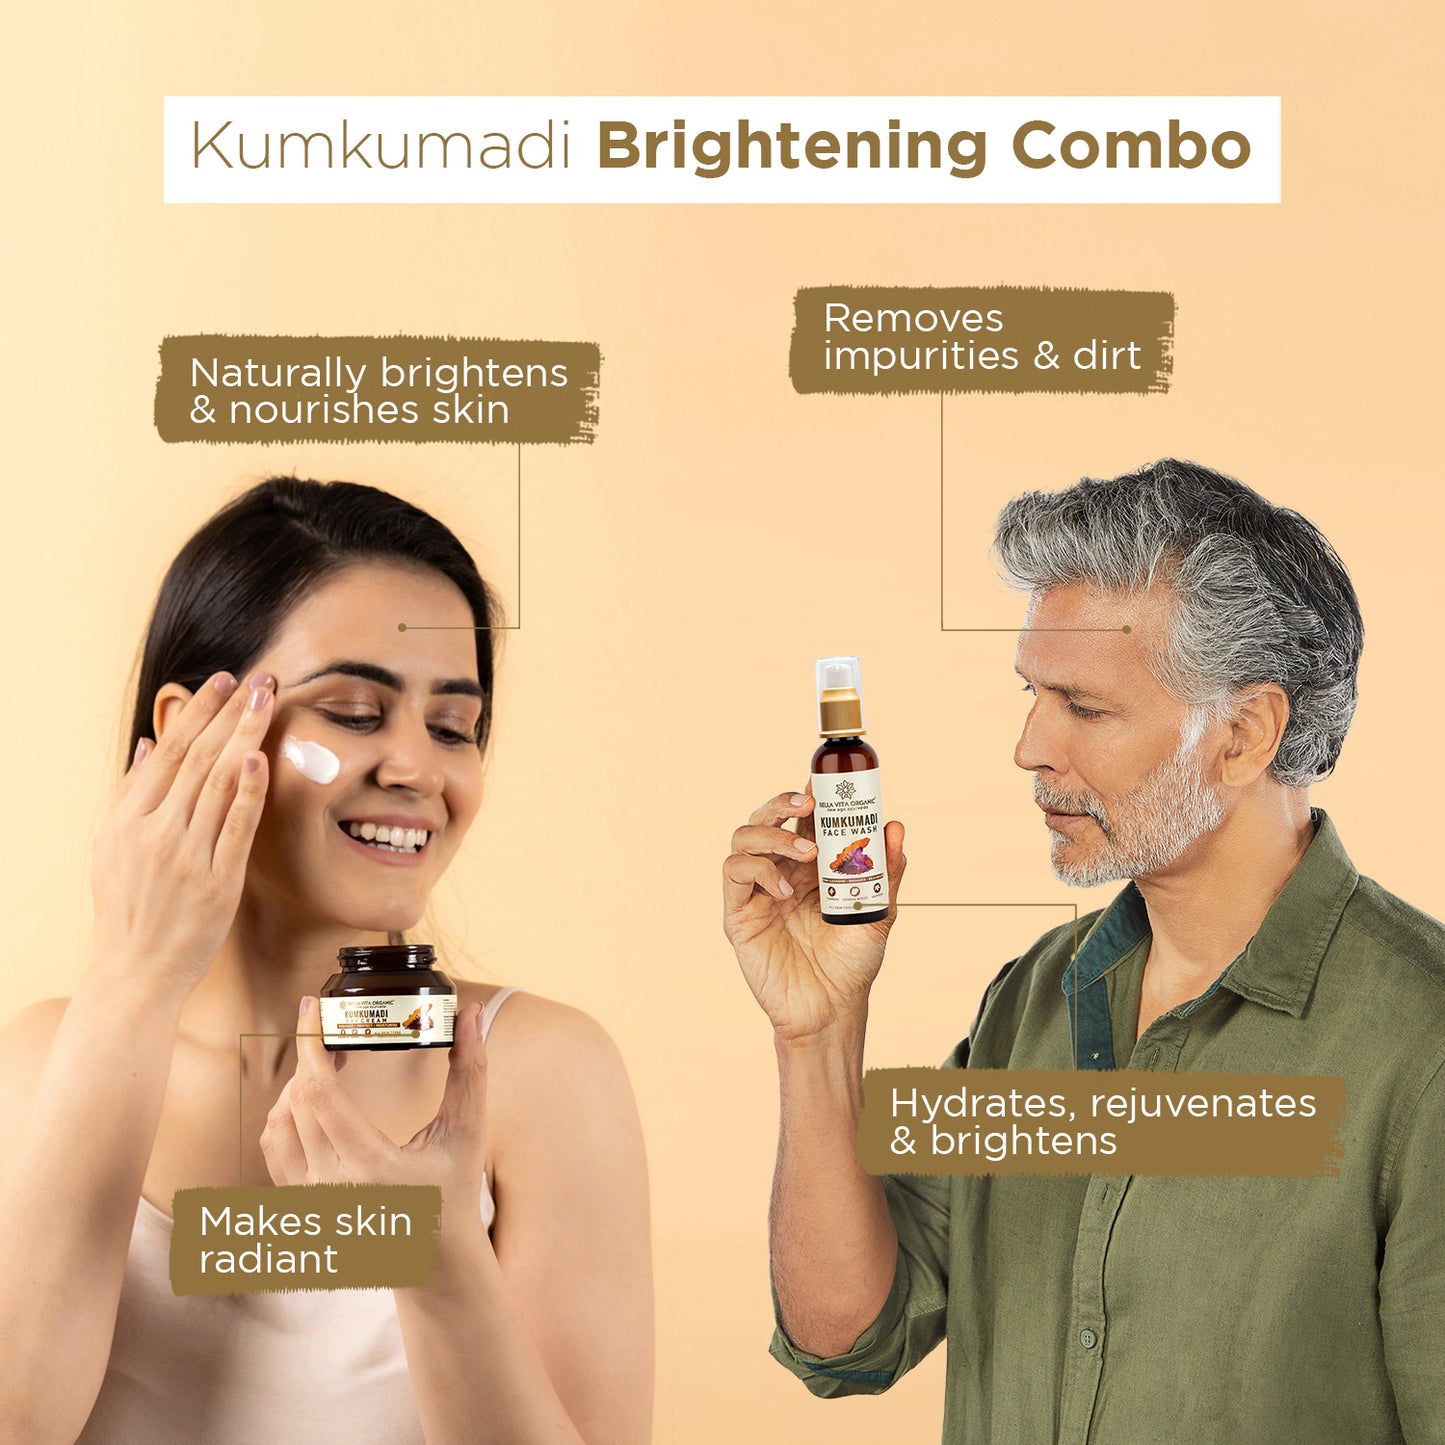 Kumkumadi Brightening Combo